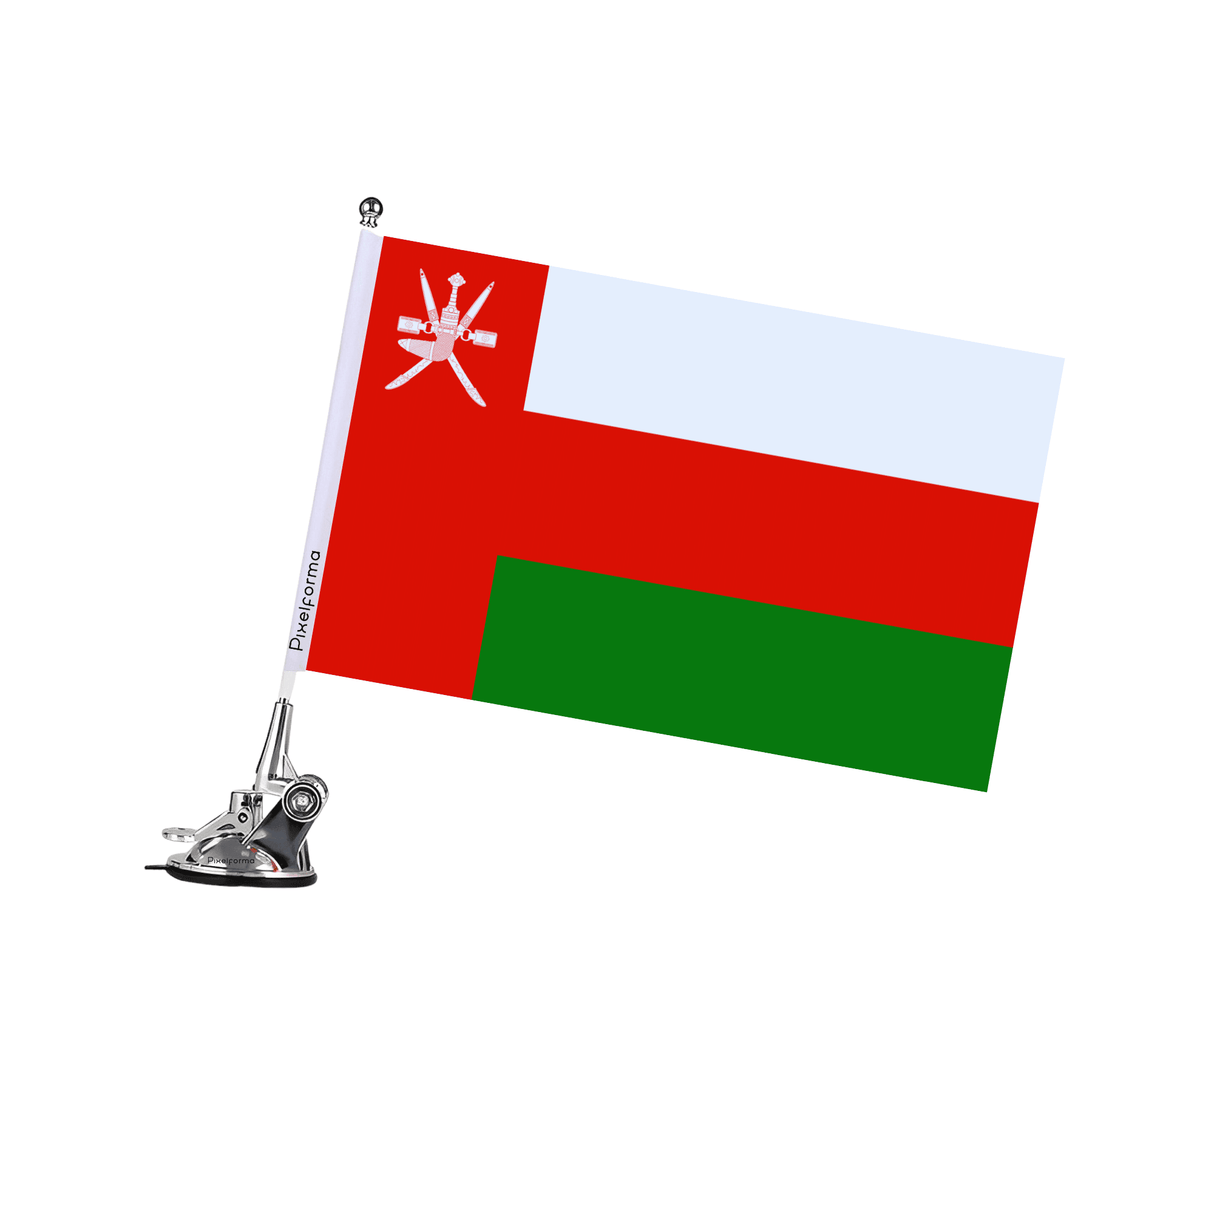 Mât à Ventouse Drapeau d'Oman - Pixelforma 